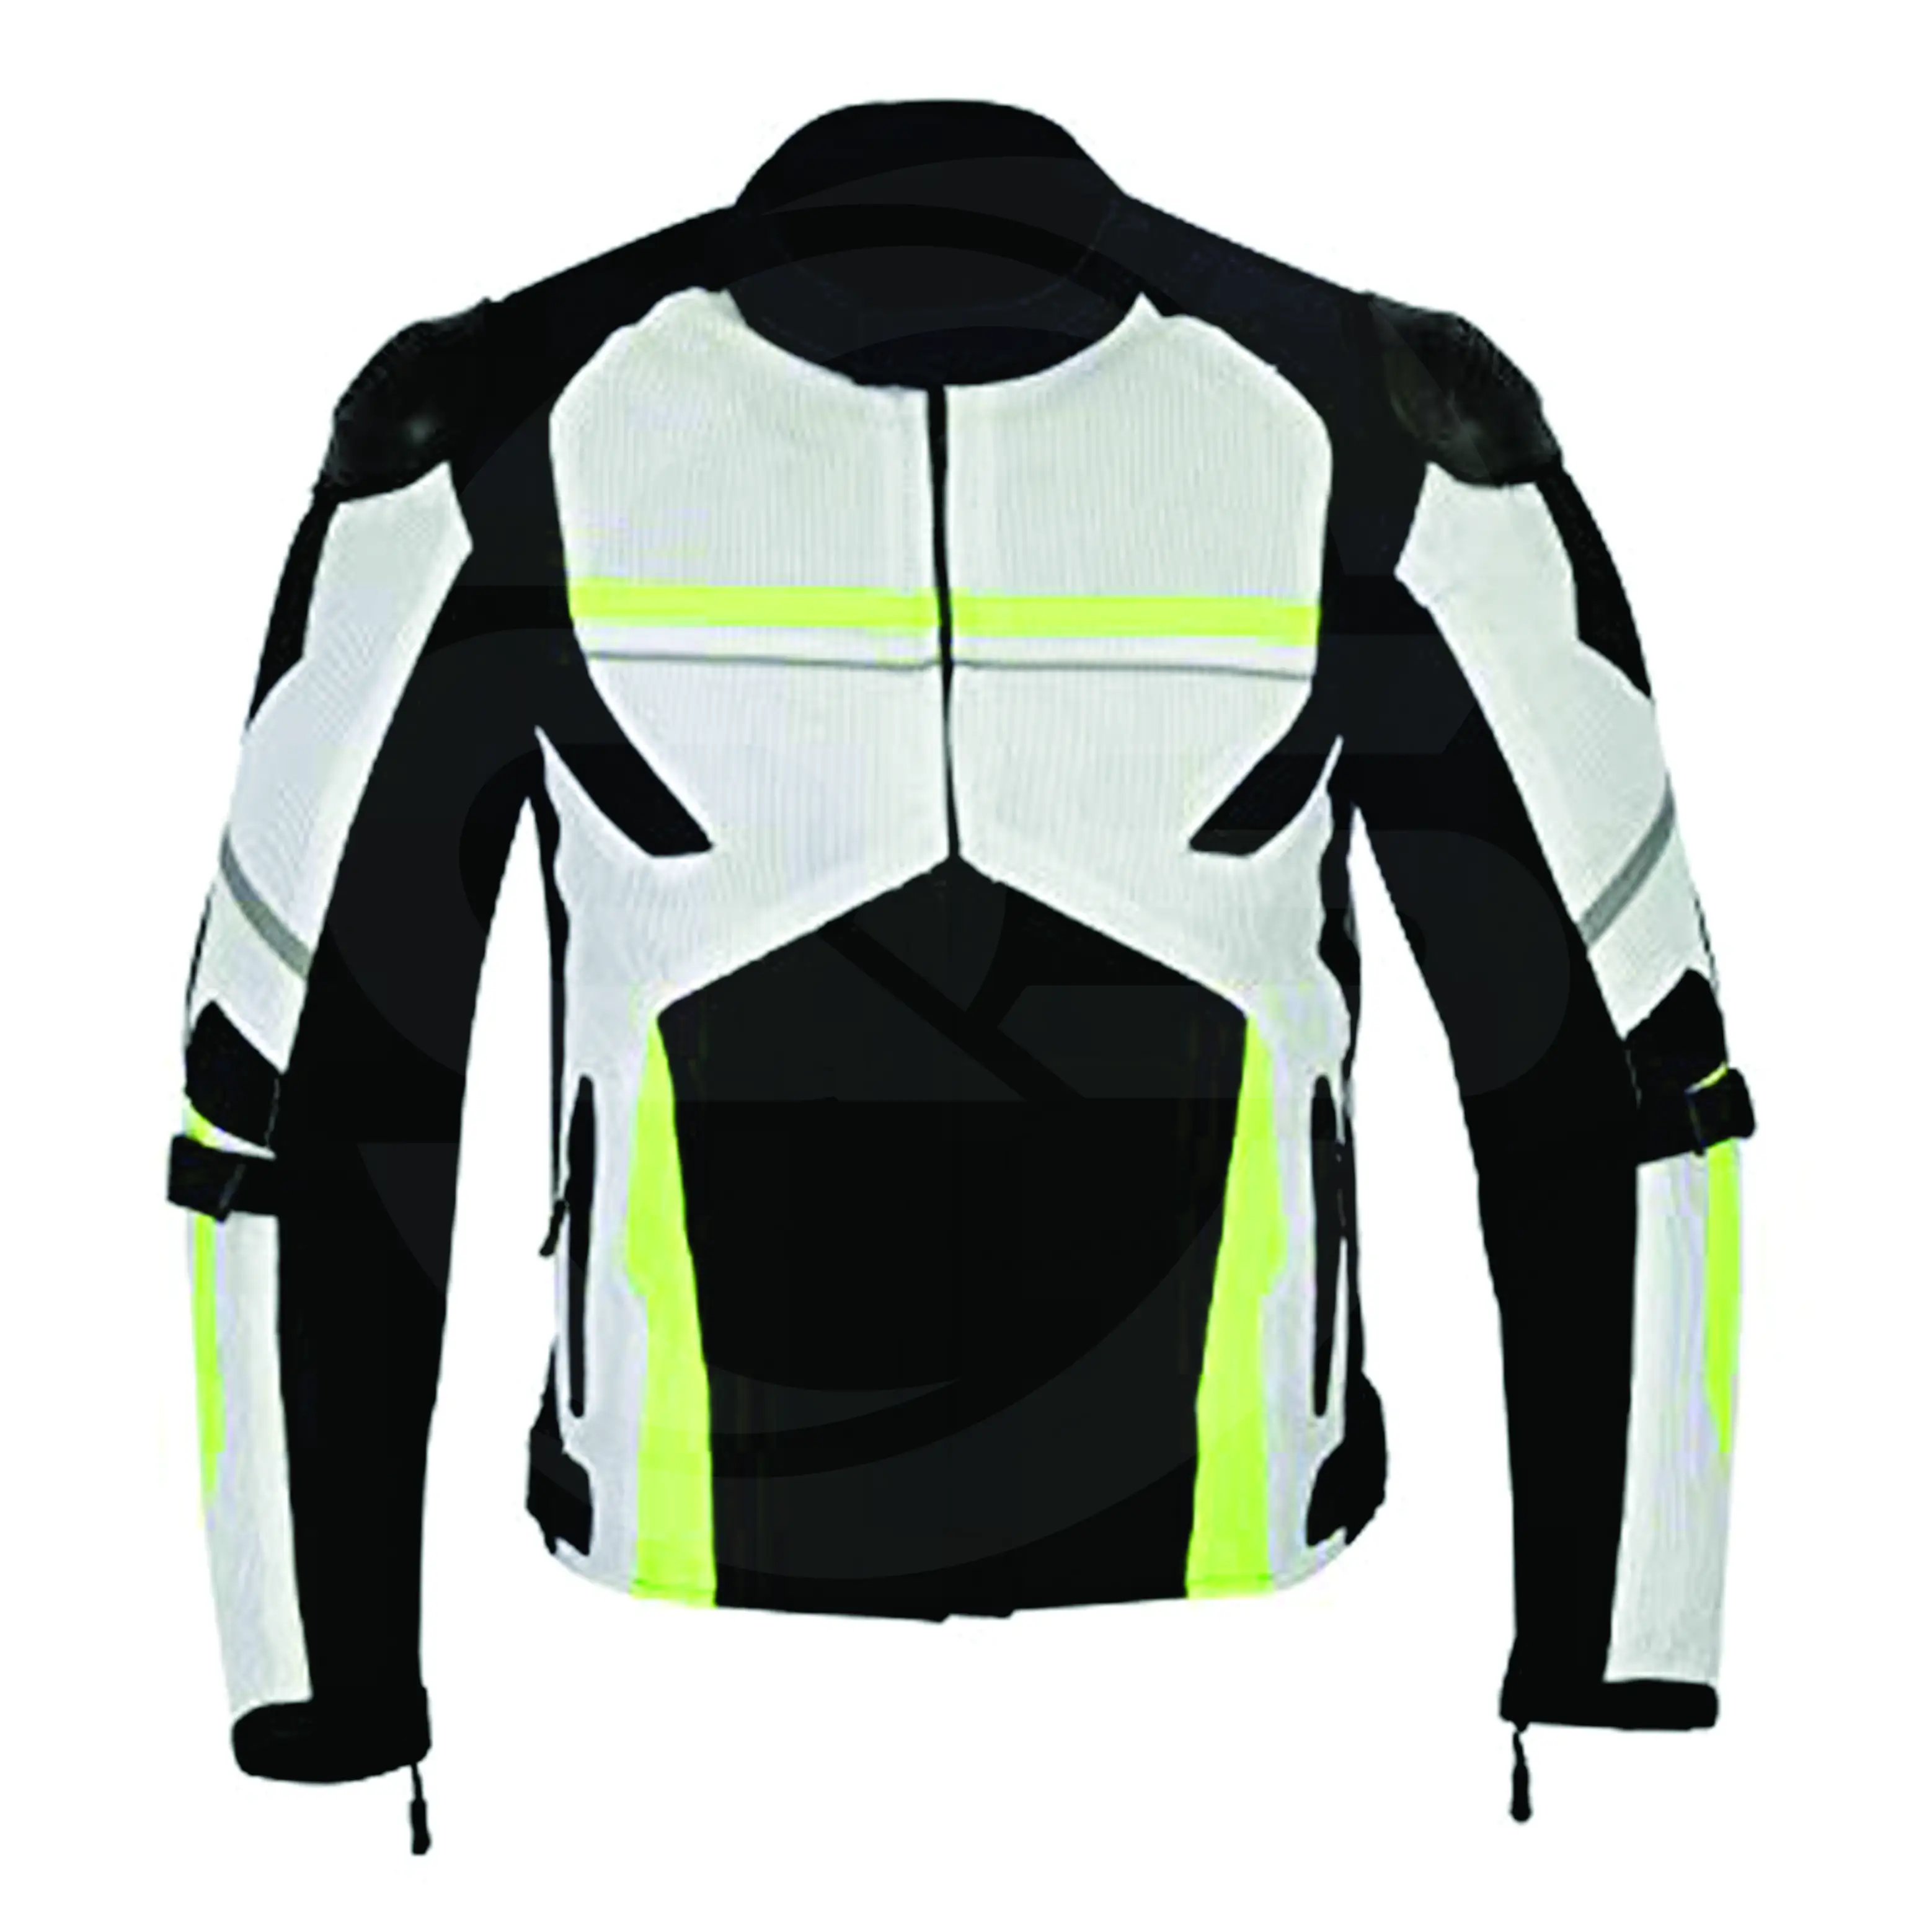 Motorbike Leather Jacket / Motorcycle Leather Jacket